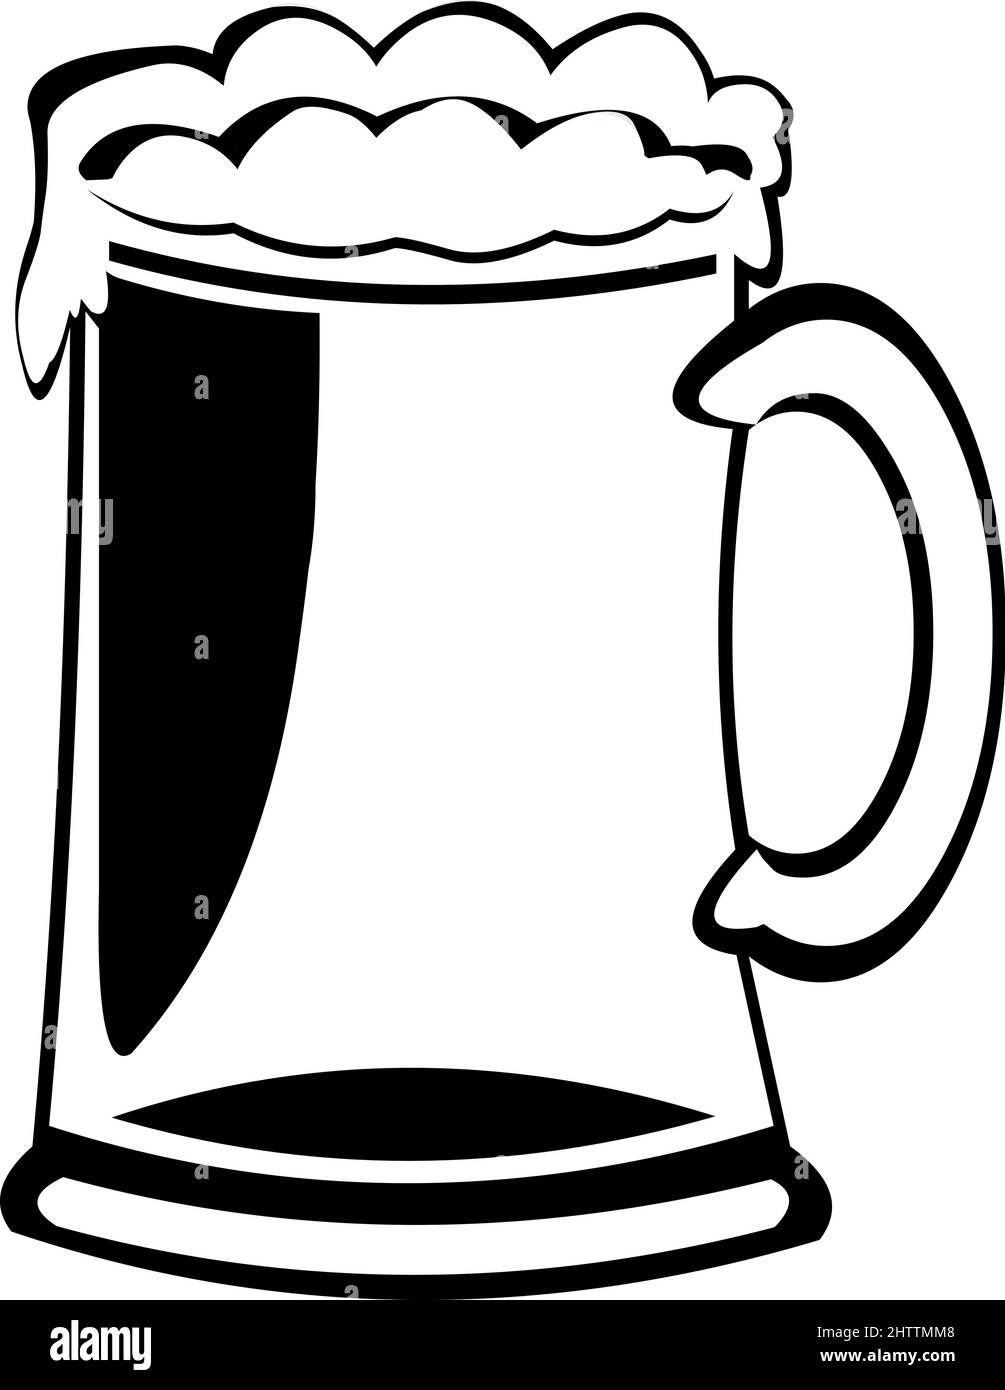 Vektordarstellung eines Bierkrug, in schwarz-weiß gezeichnet Stock Vektor